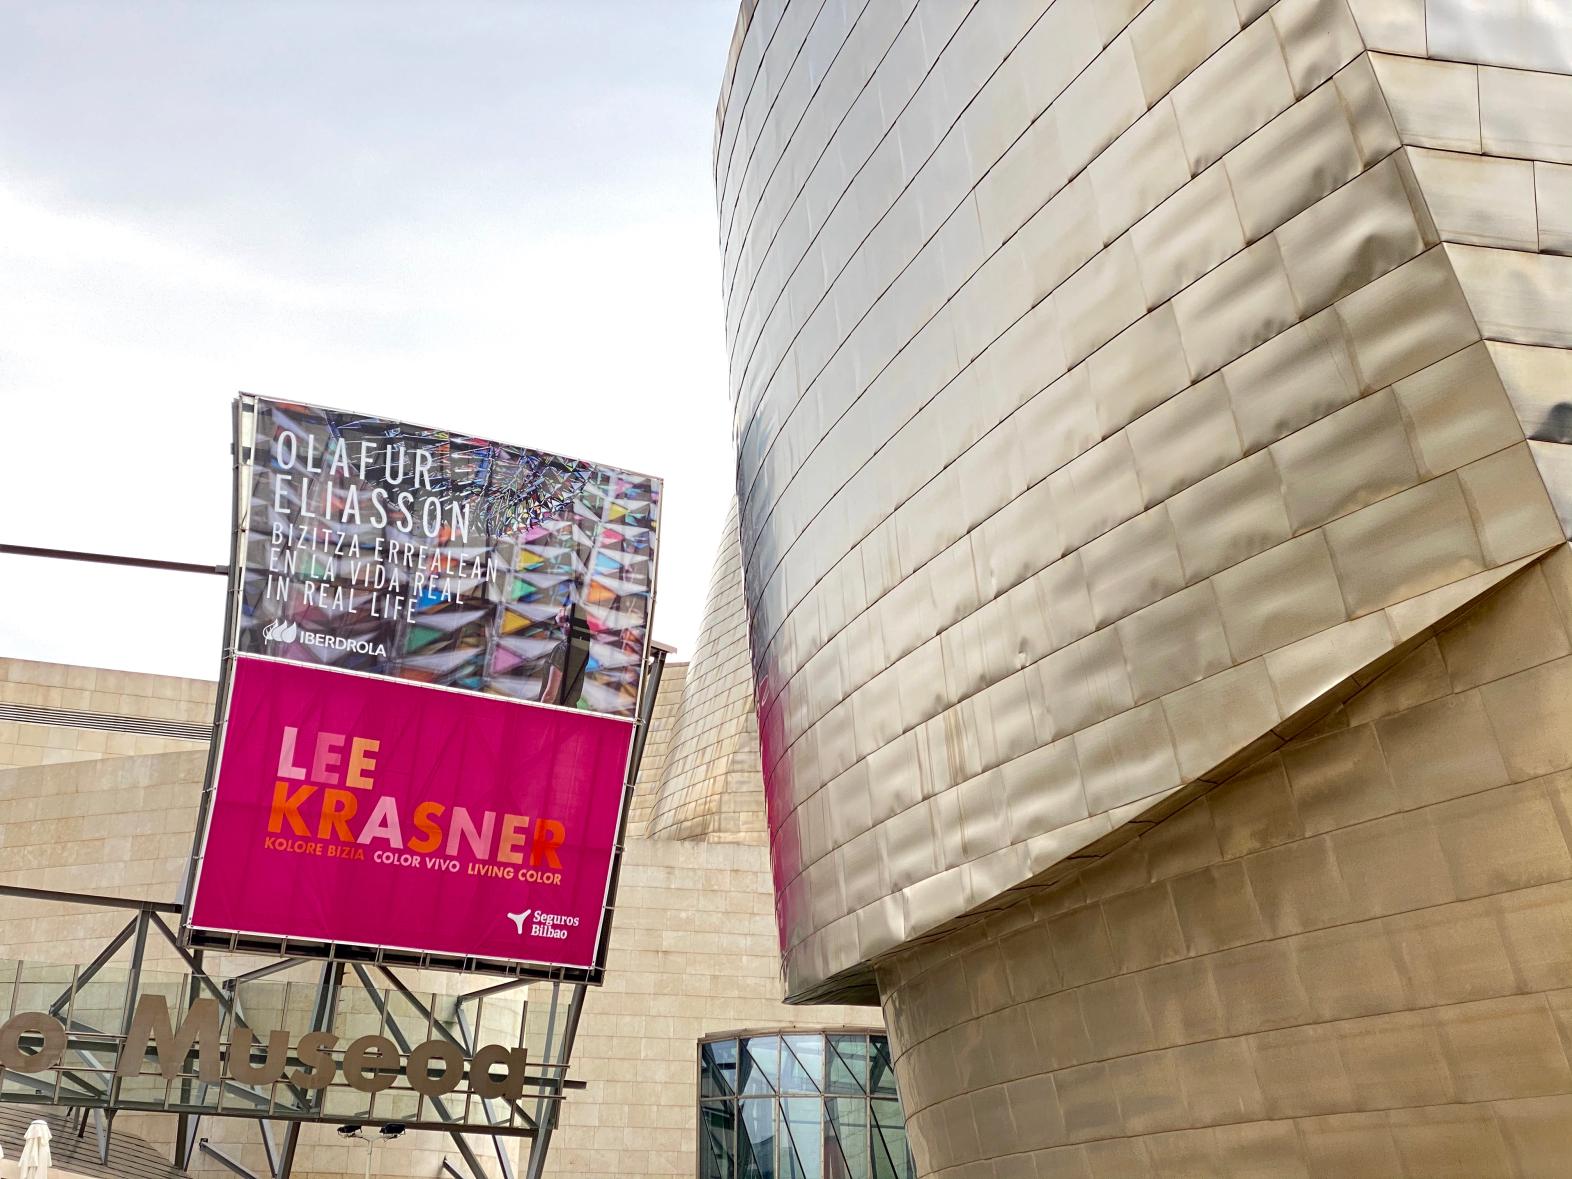 Seguros Bilbao patrocina la primera exposición Lee Krasner en España en el Museo Guggenheim Bilbao